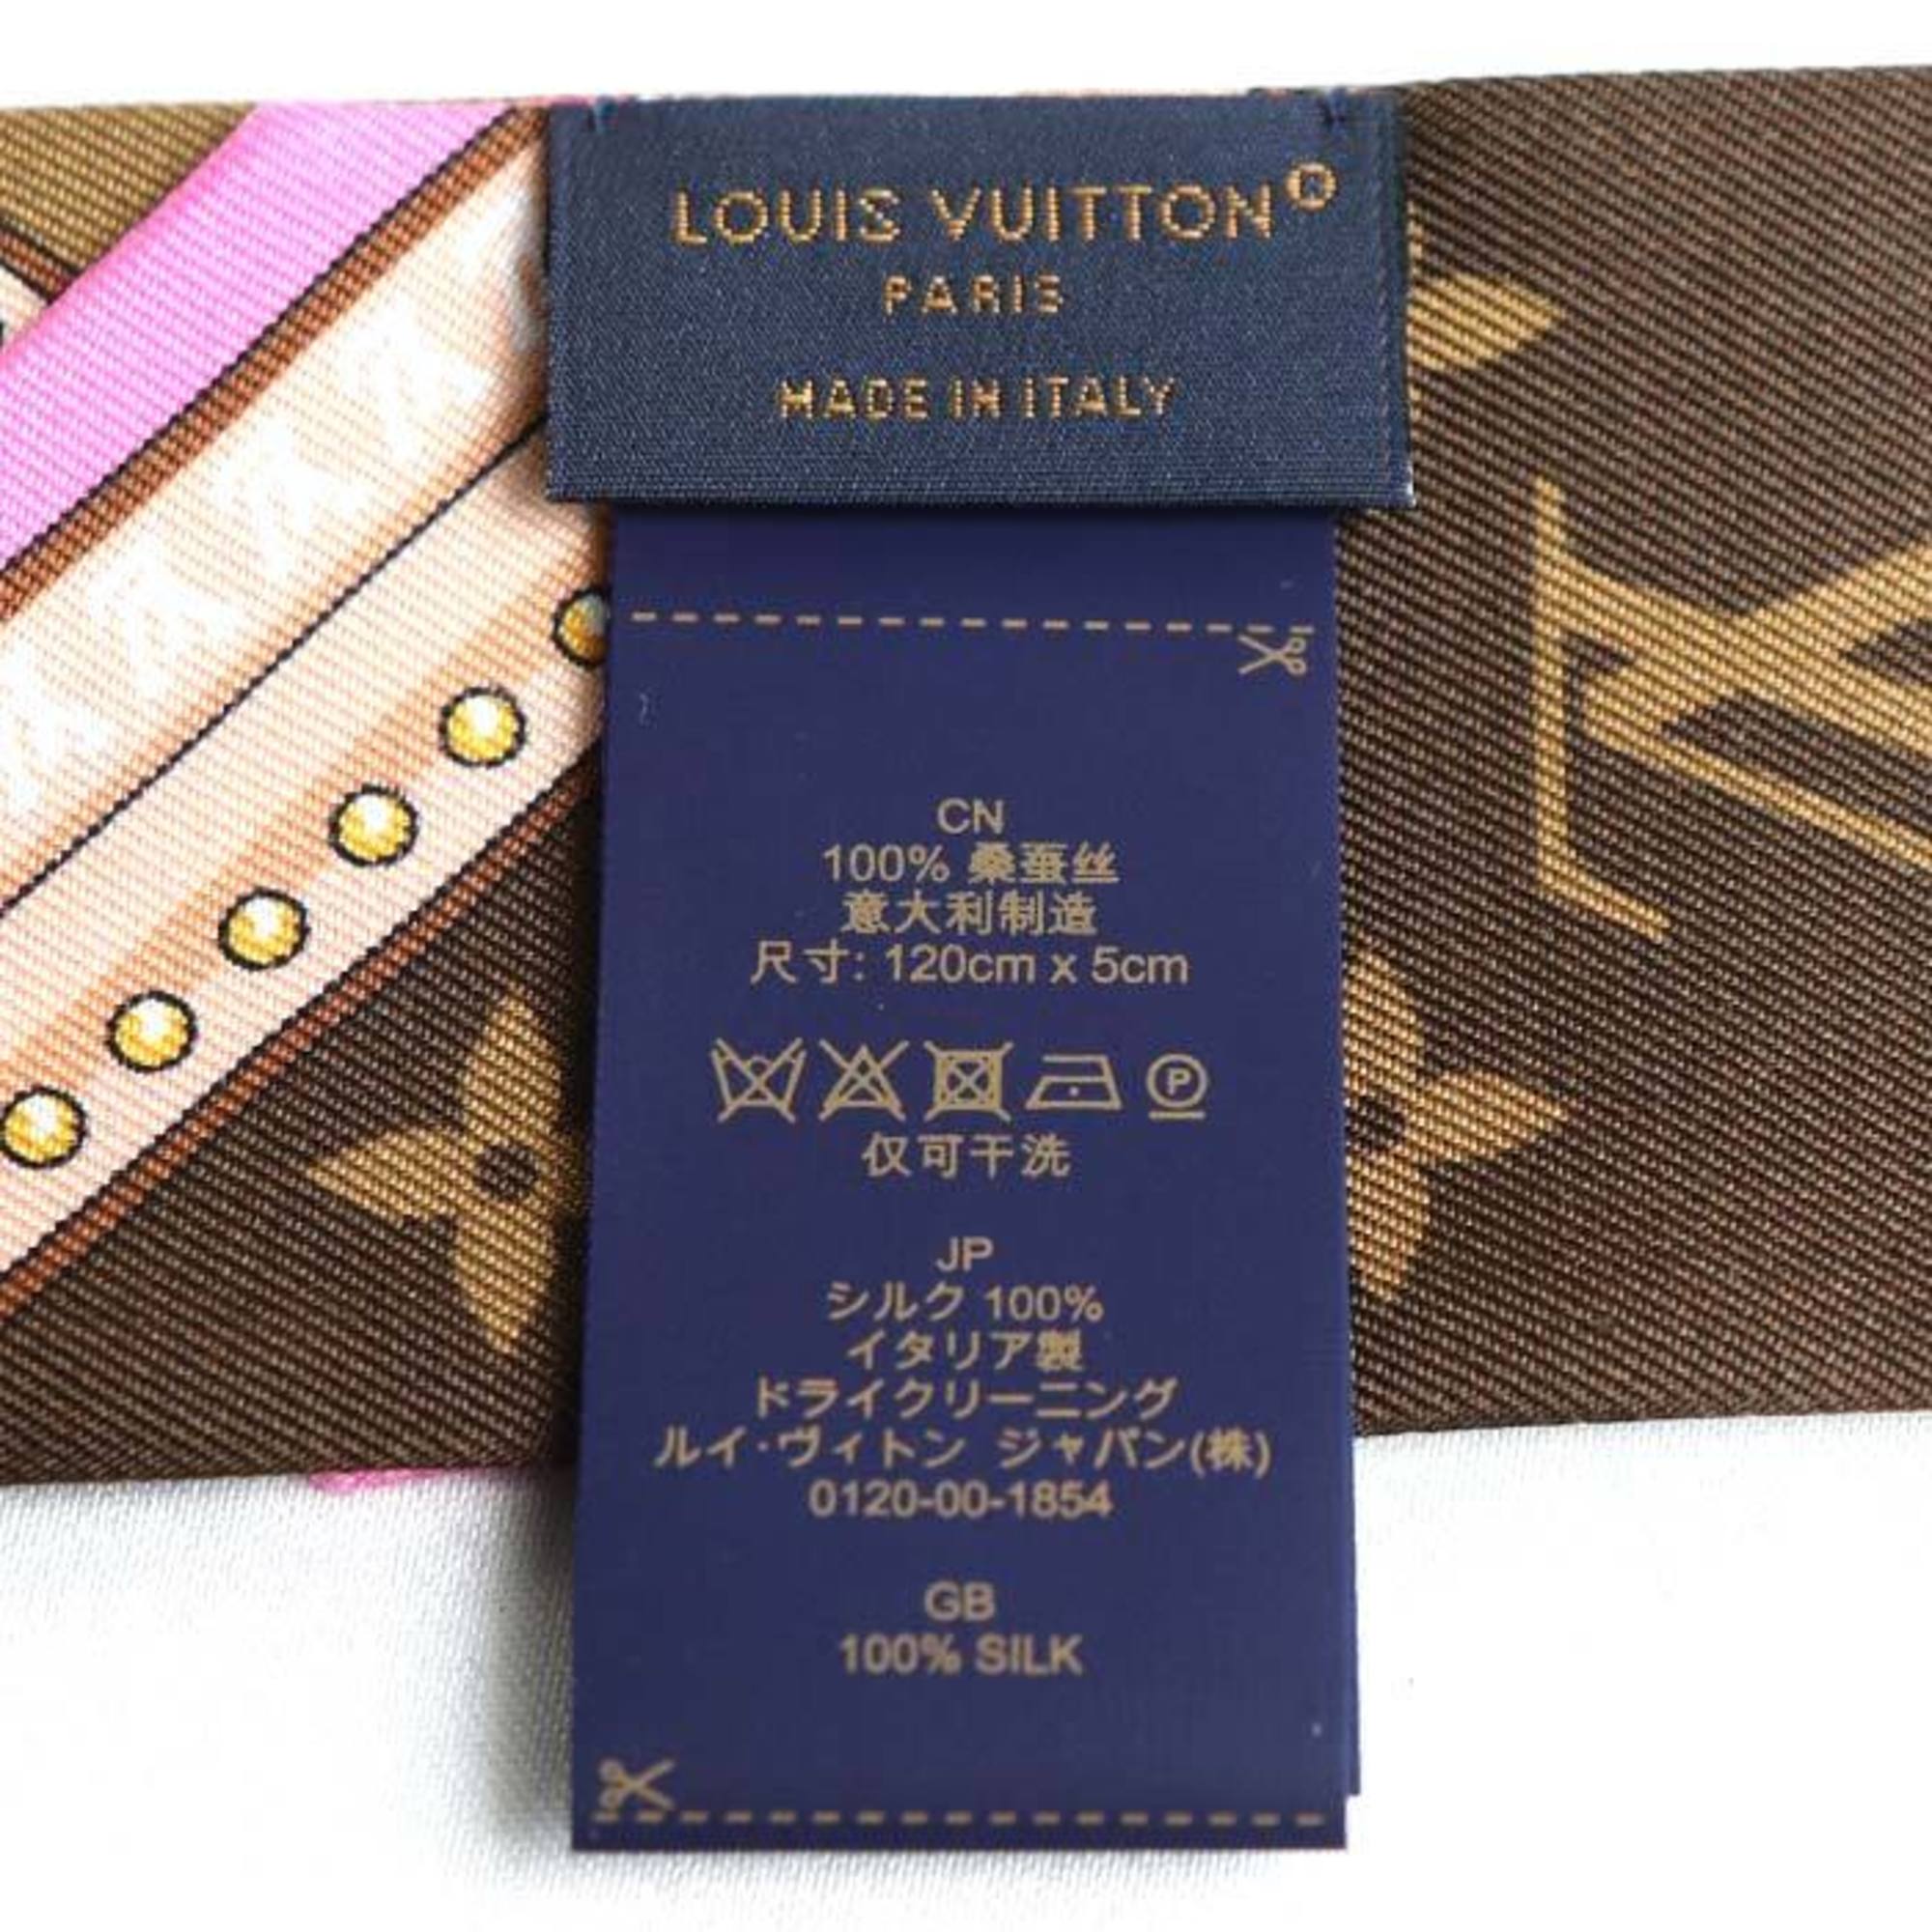 LOUIS VUITTON Louis Vuitton Bandeau BB Ultimate Scarf Muffler Multicolor Noir M76676 Women's